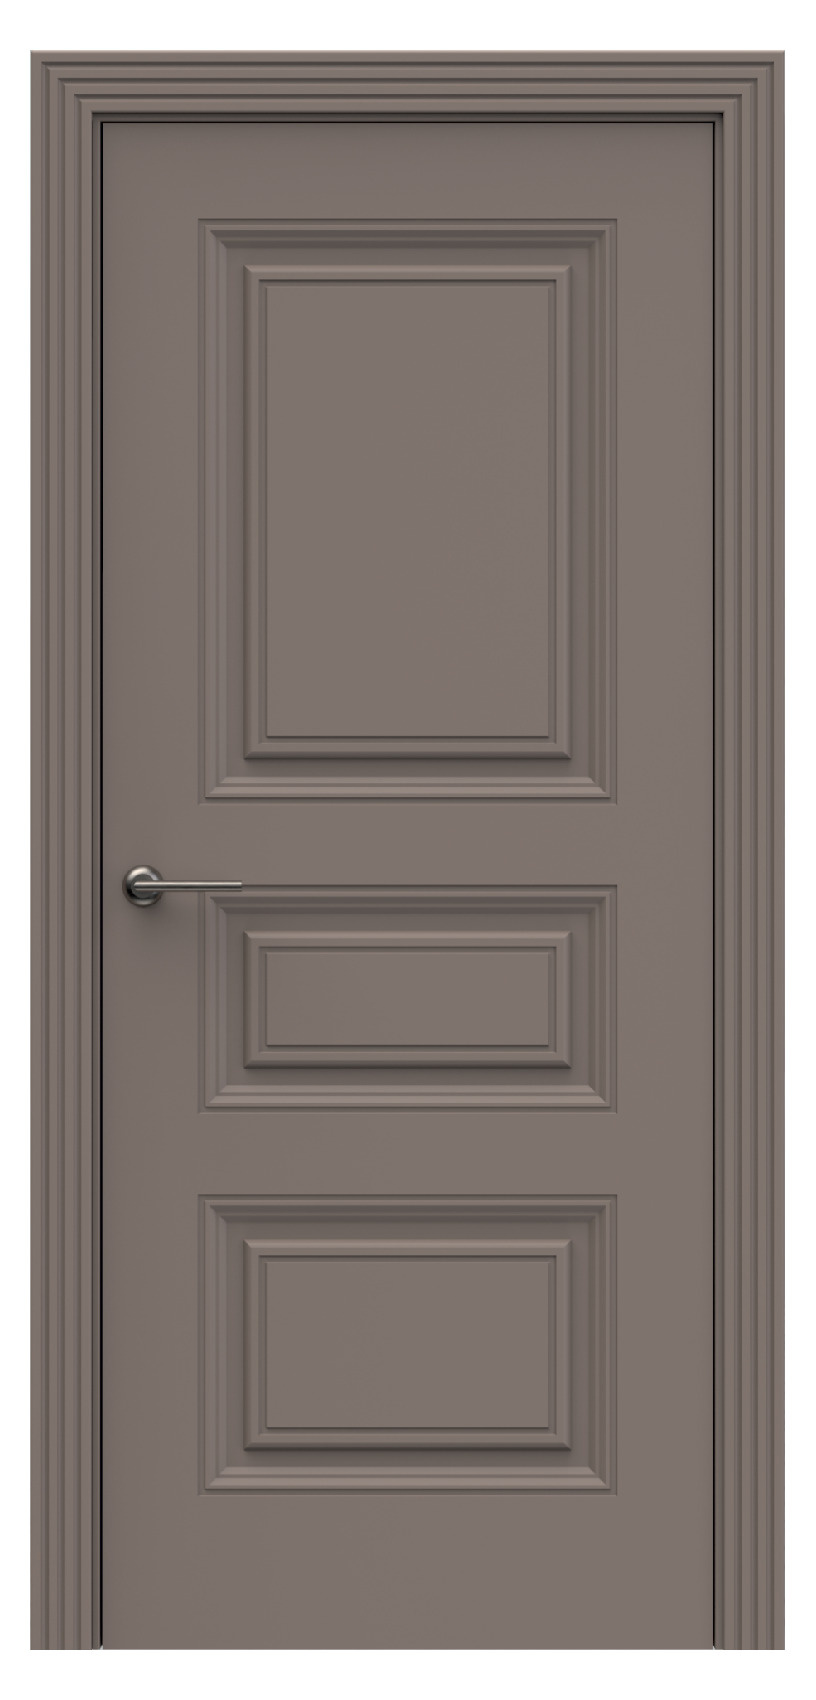 Questdoors Межкомнатная дверь QB3, арт. 17904 - фото №1